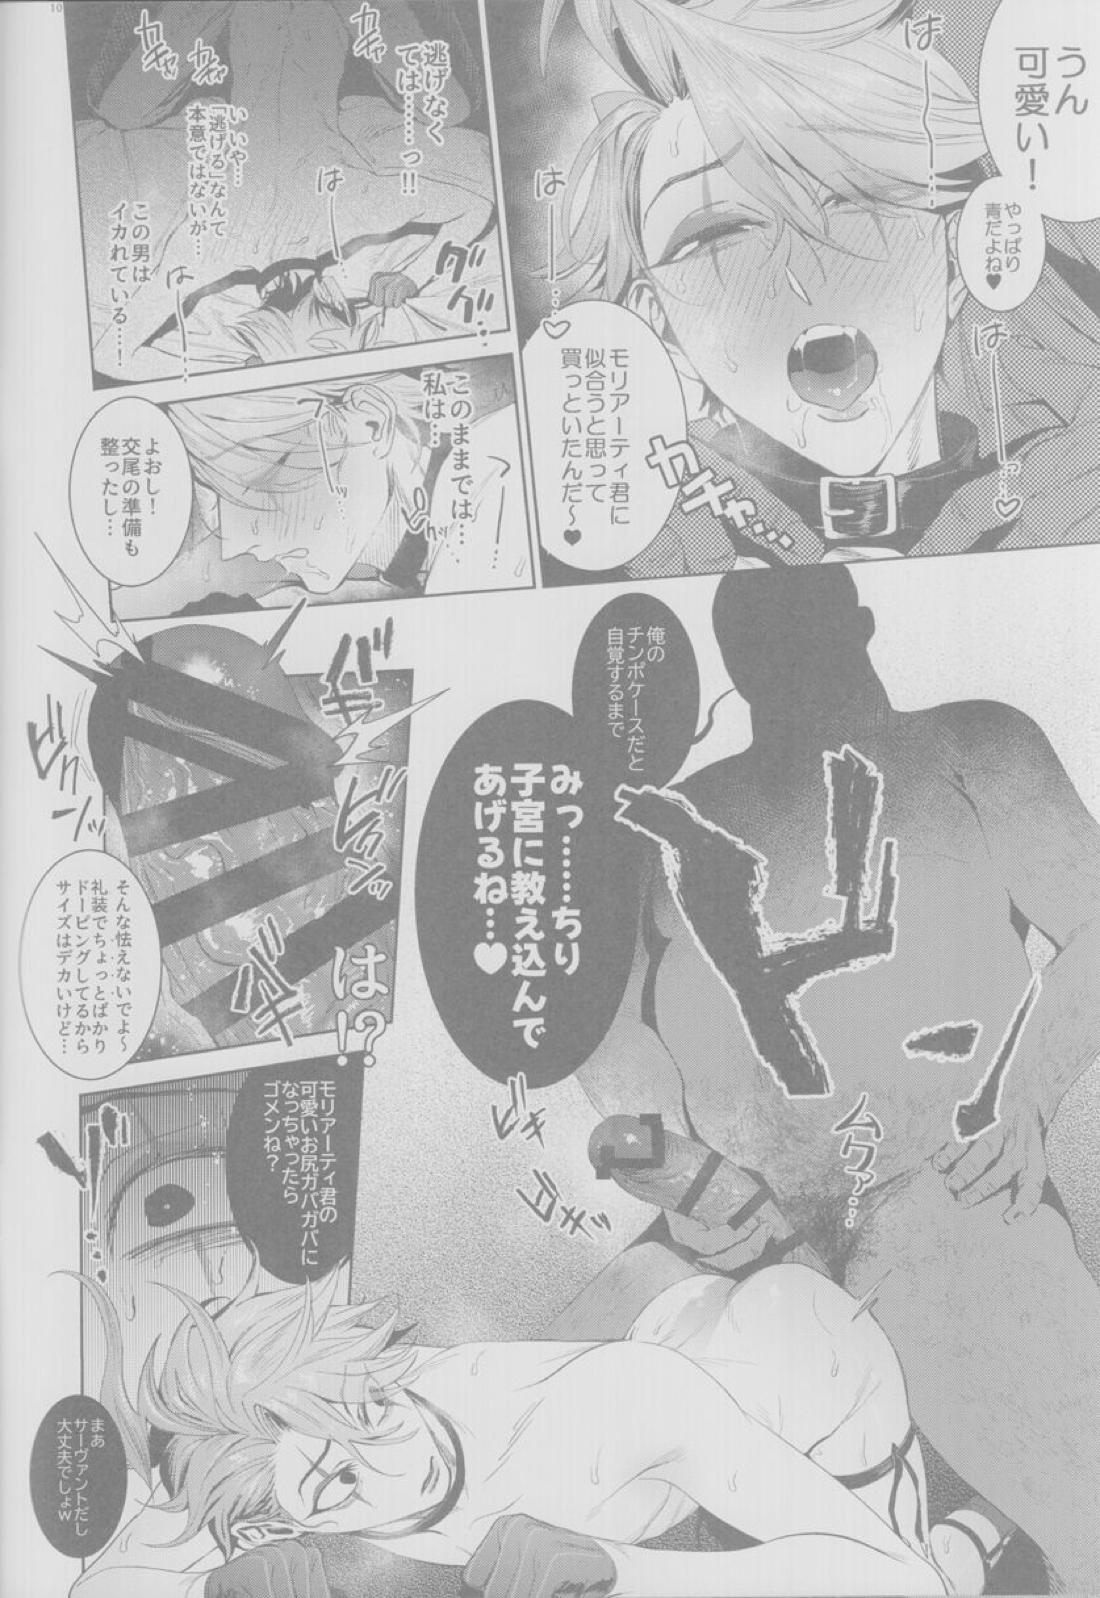 【BL漫画 Fate/Grand Order】悪いことばかりする悪の天才モリアーティがマスターの絶対服従コマンドコードで身体を操られて調教されちゃうドキドキゲイエッチ9